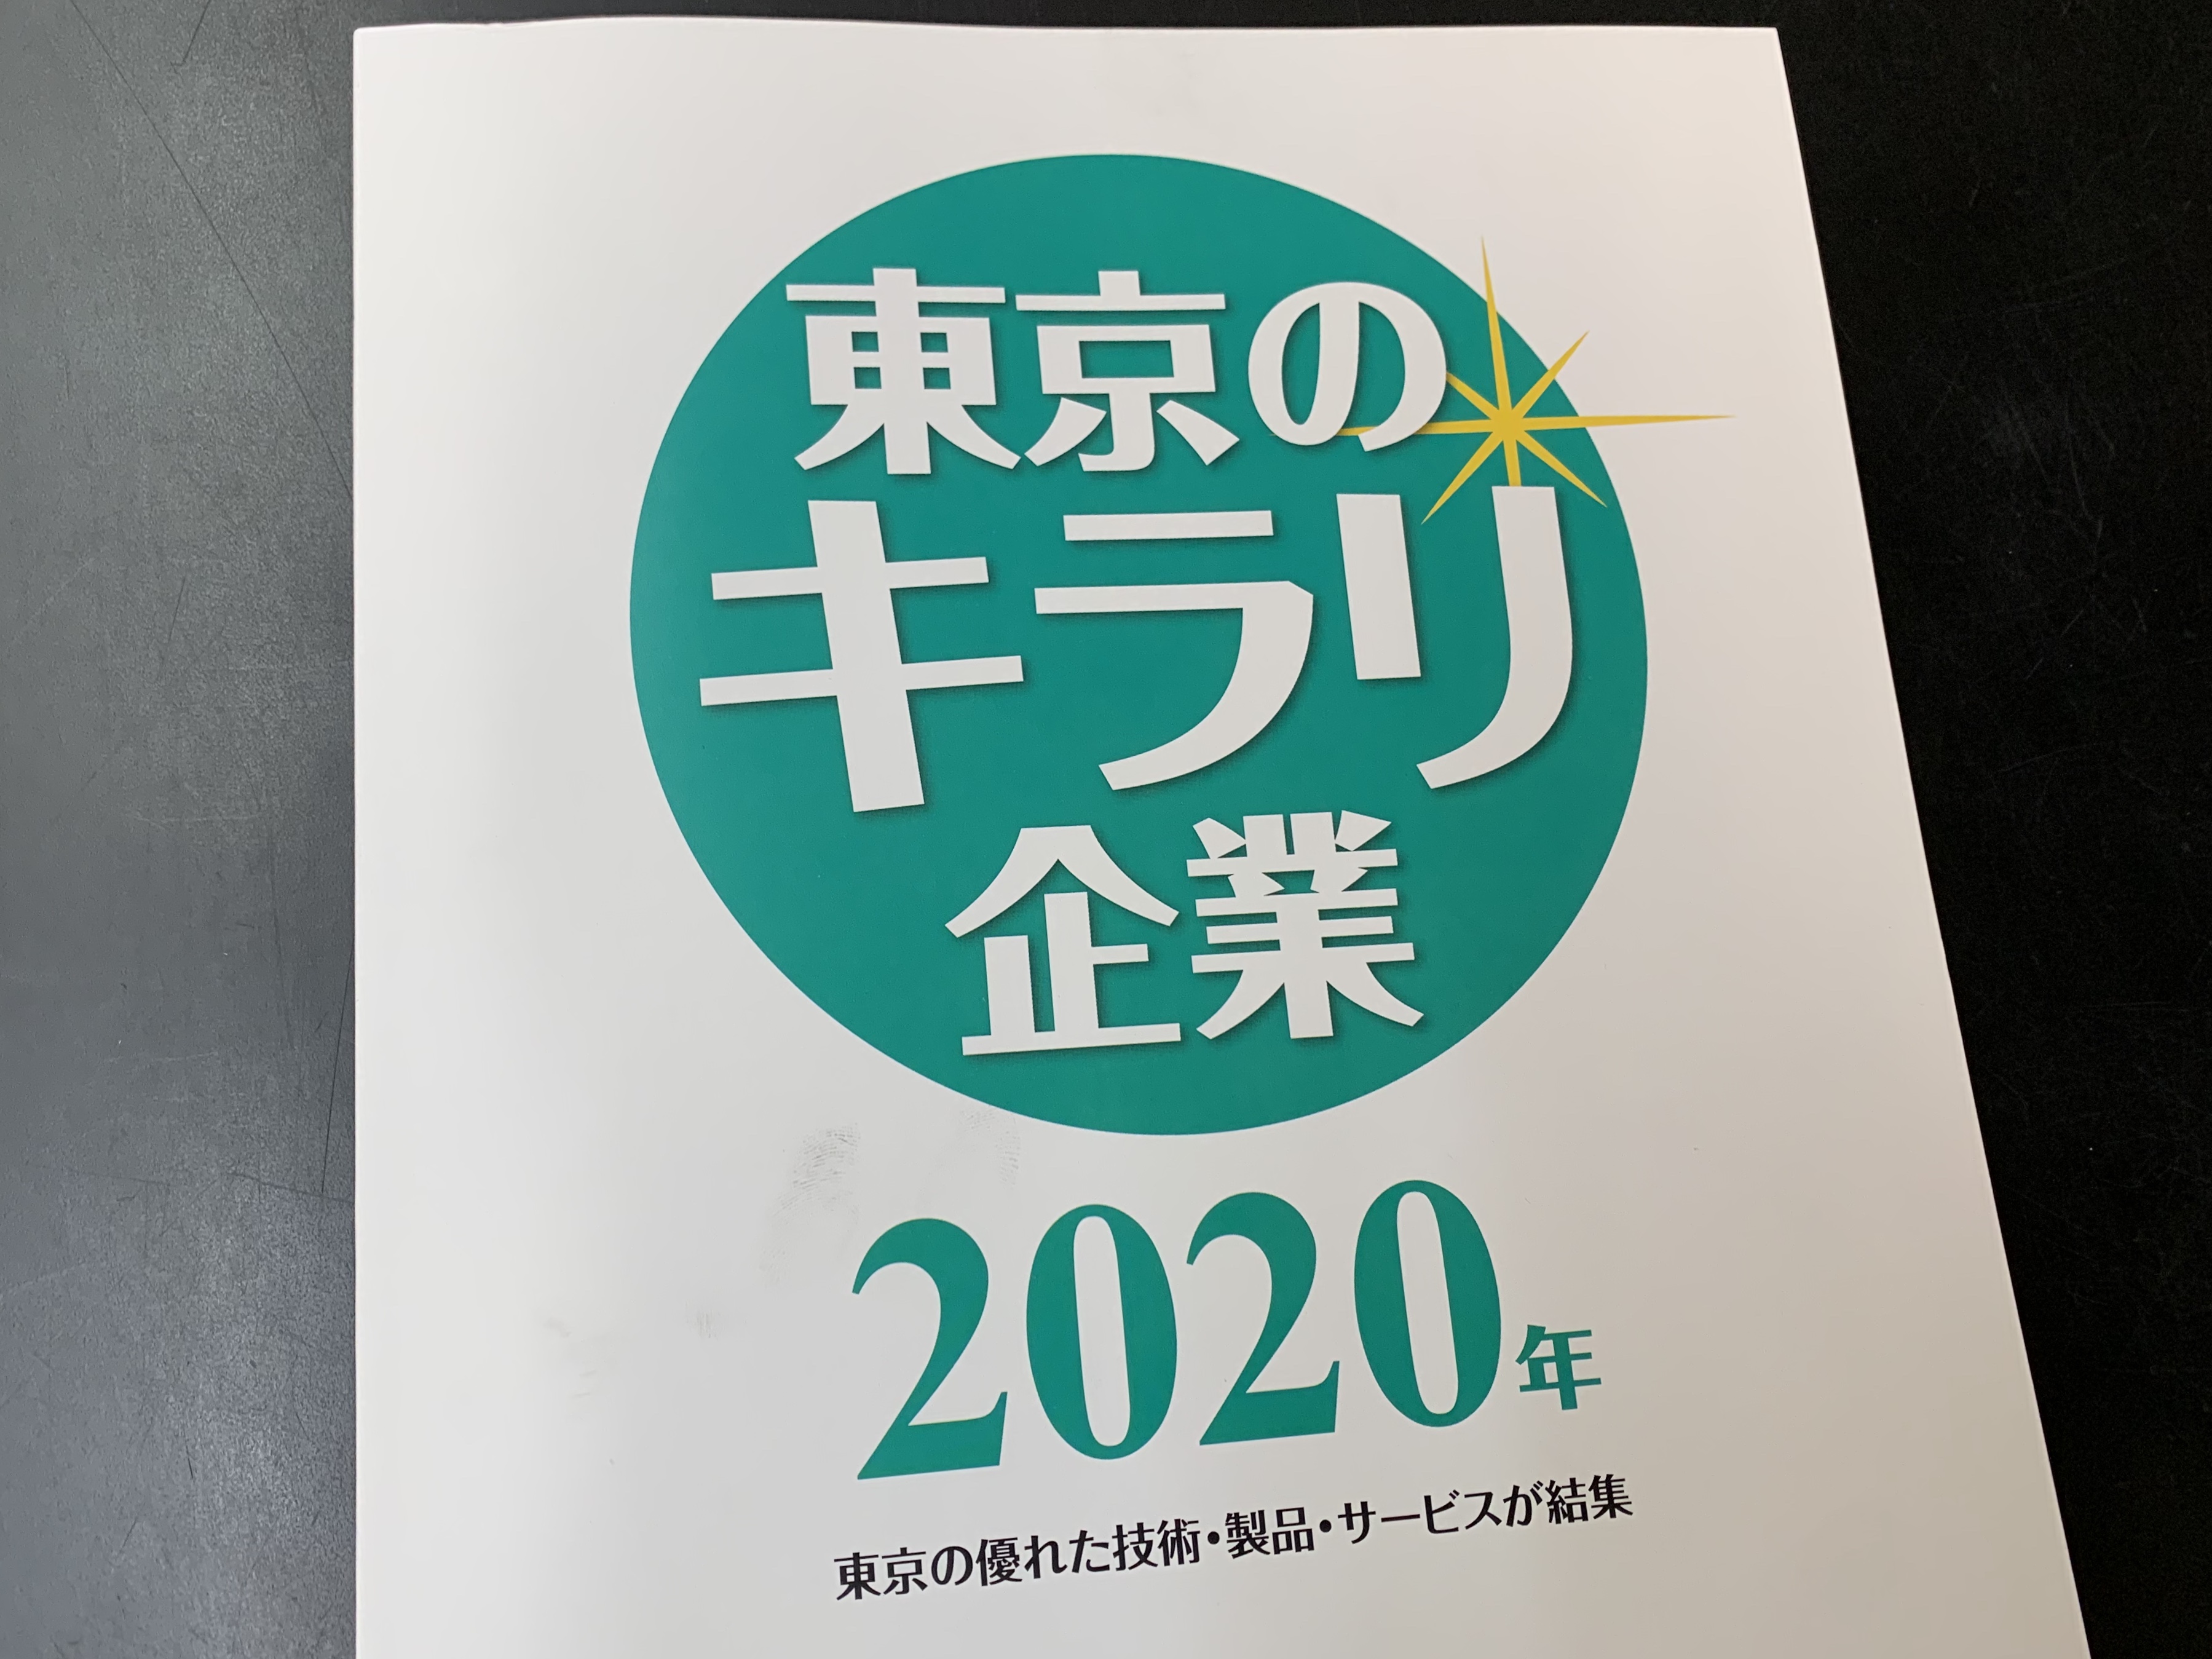 東京キラリ企業2020に飯田屋が選出されました